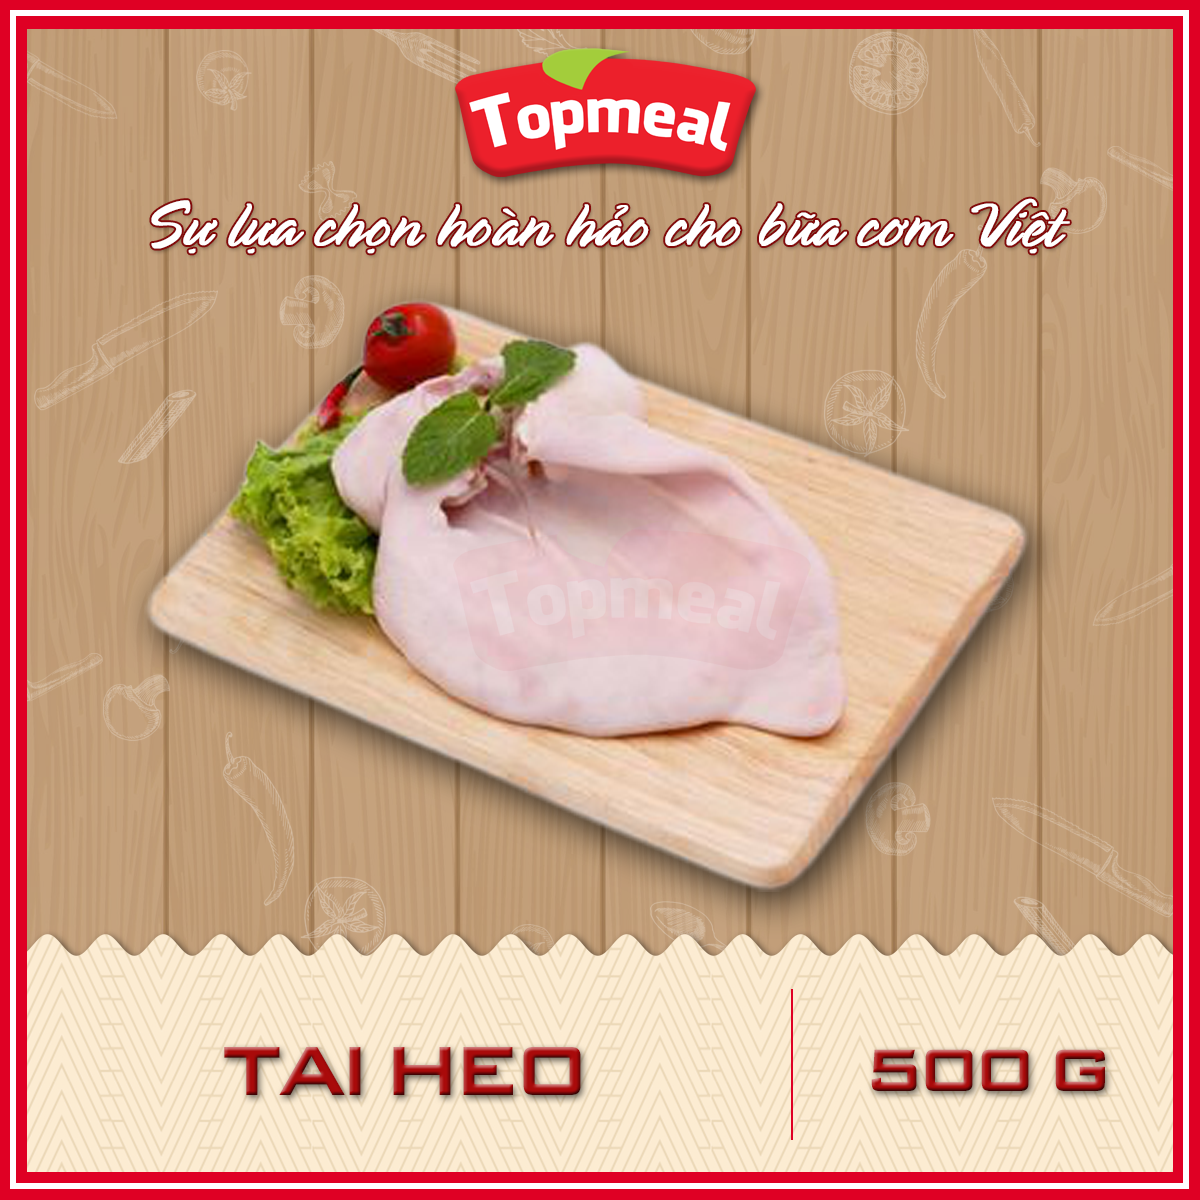 HCM - Tai heo- Thích hợp với các món xào, gỏi, luộc, thịt đông, cuộn, ngâm